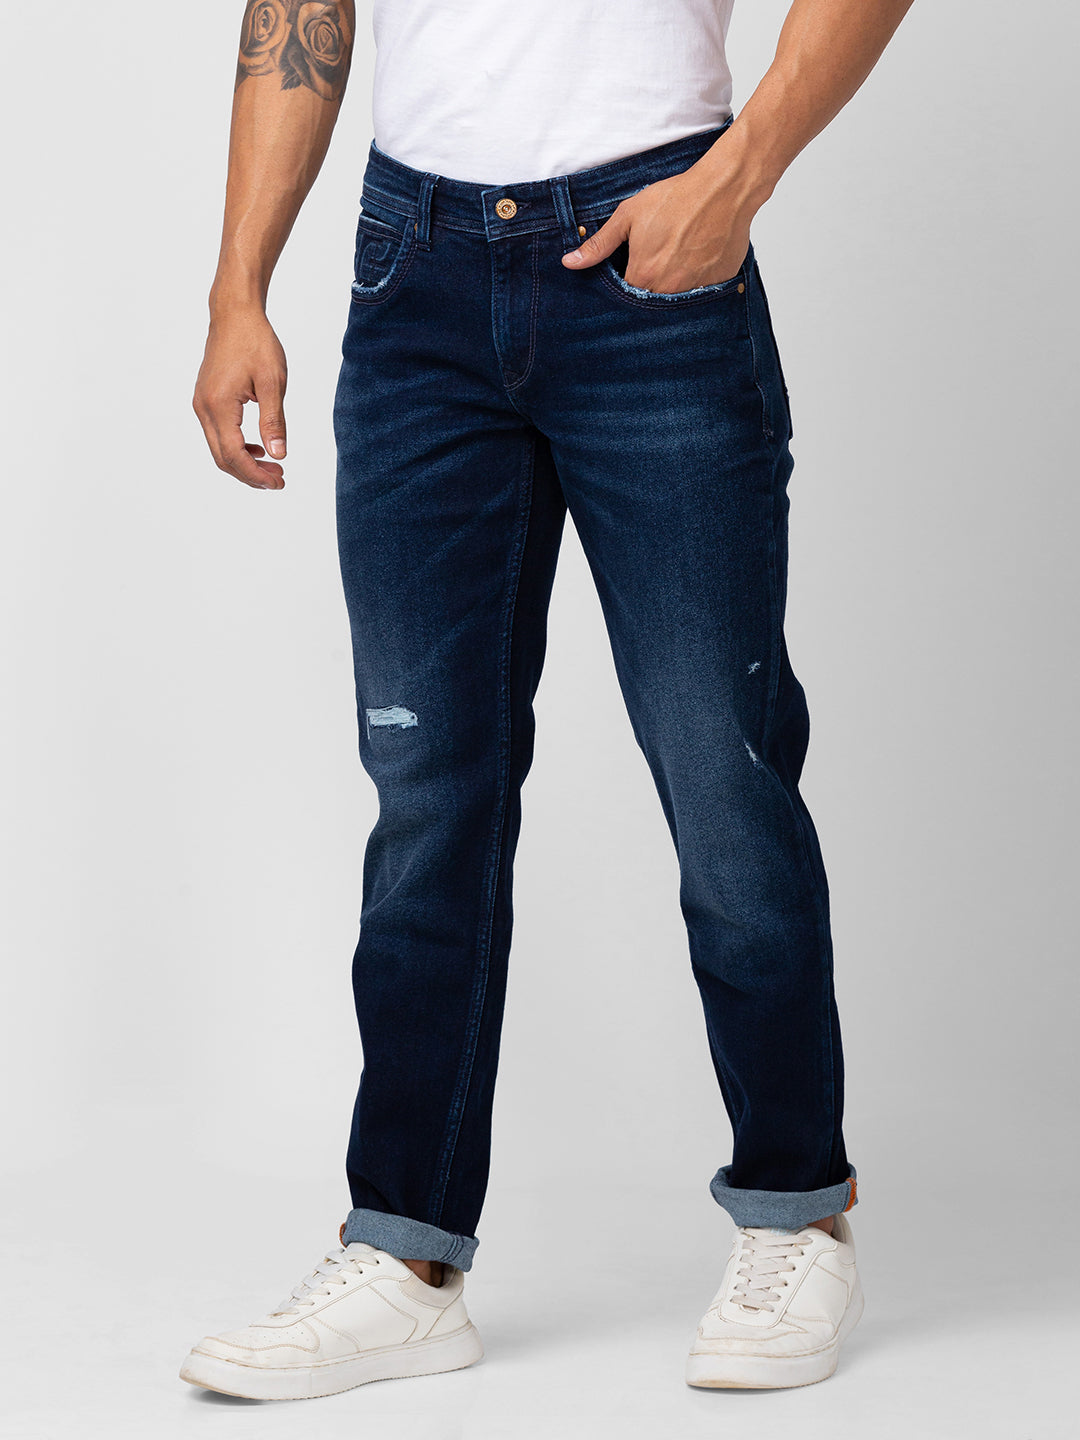 Men's light blue spykar jeans